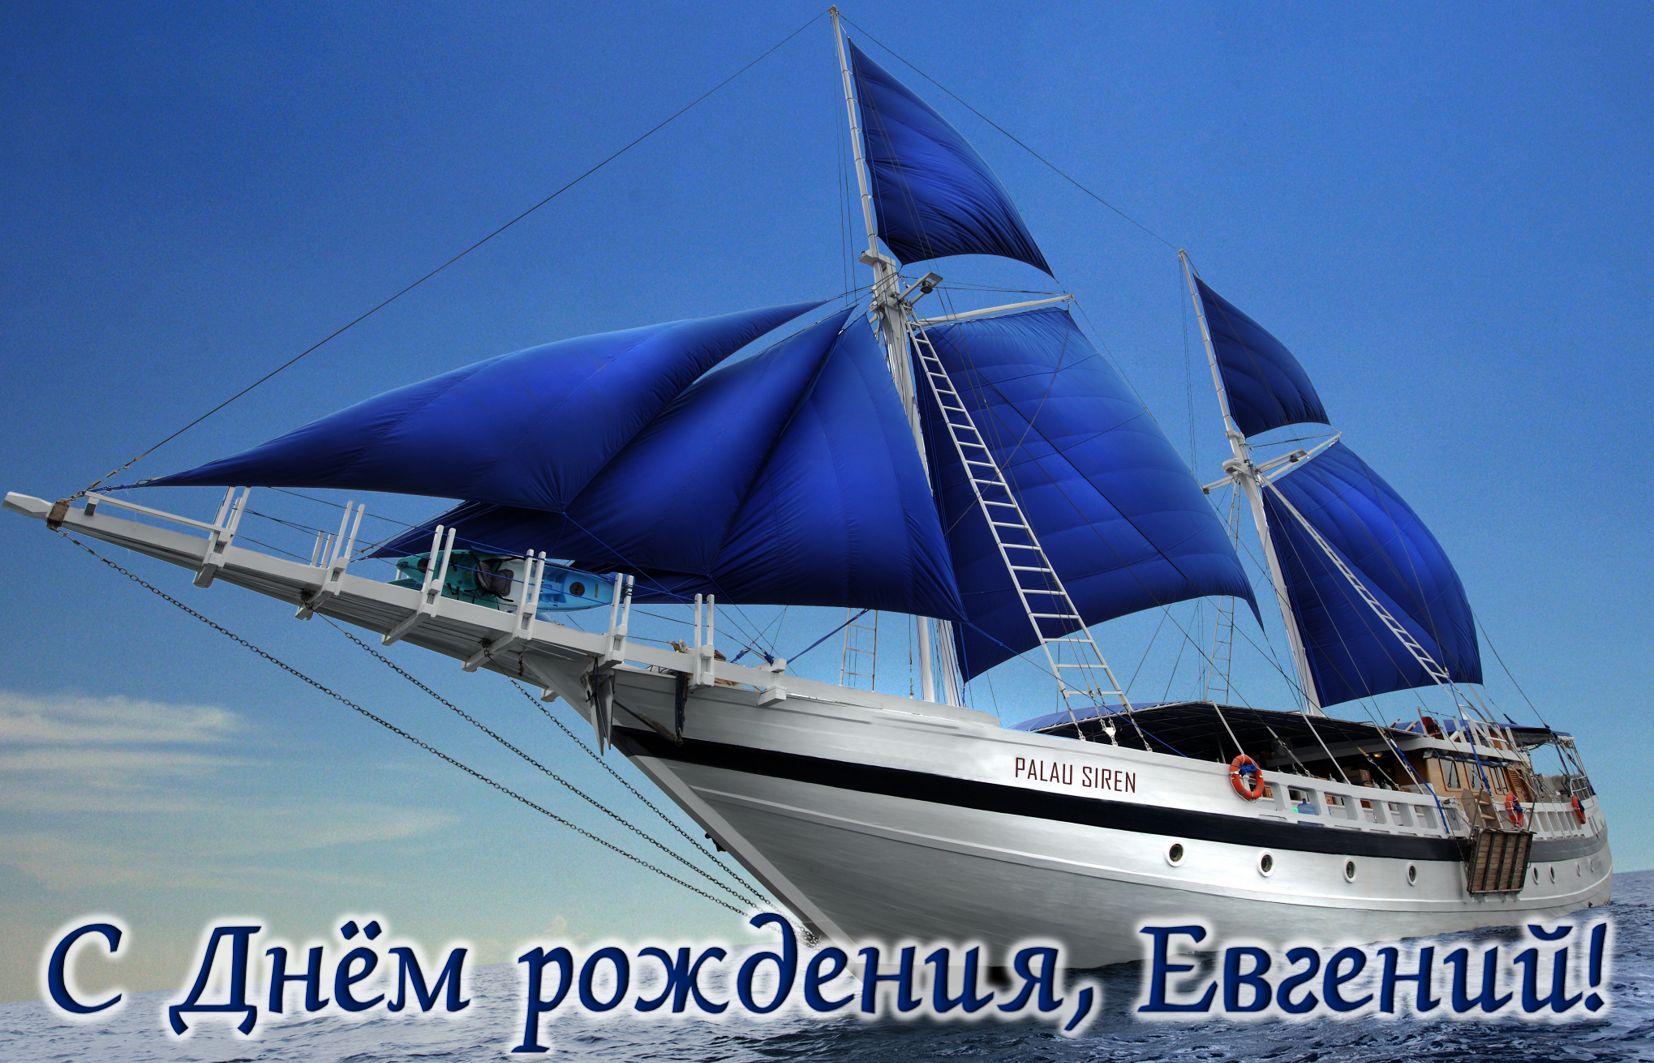 Открытка на День рождения Евгению - красивая яхта с синими парусами